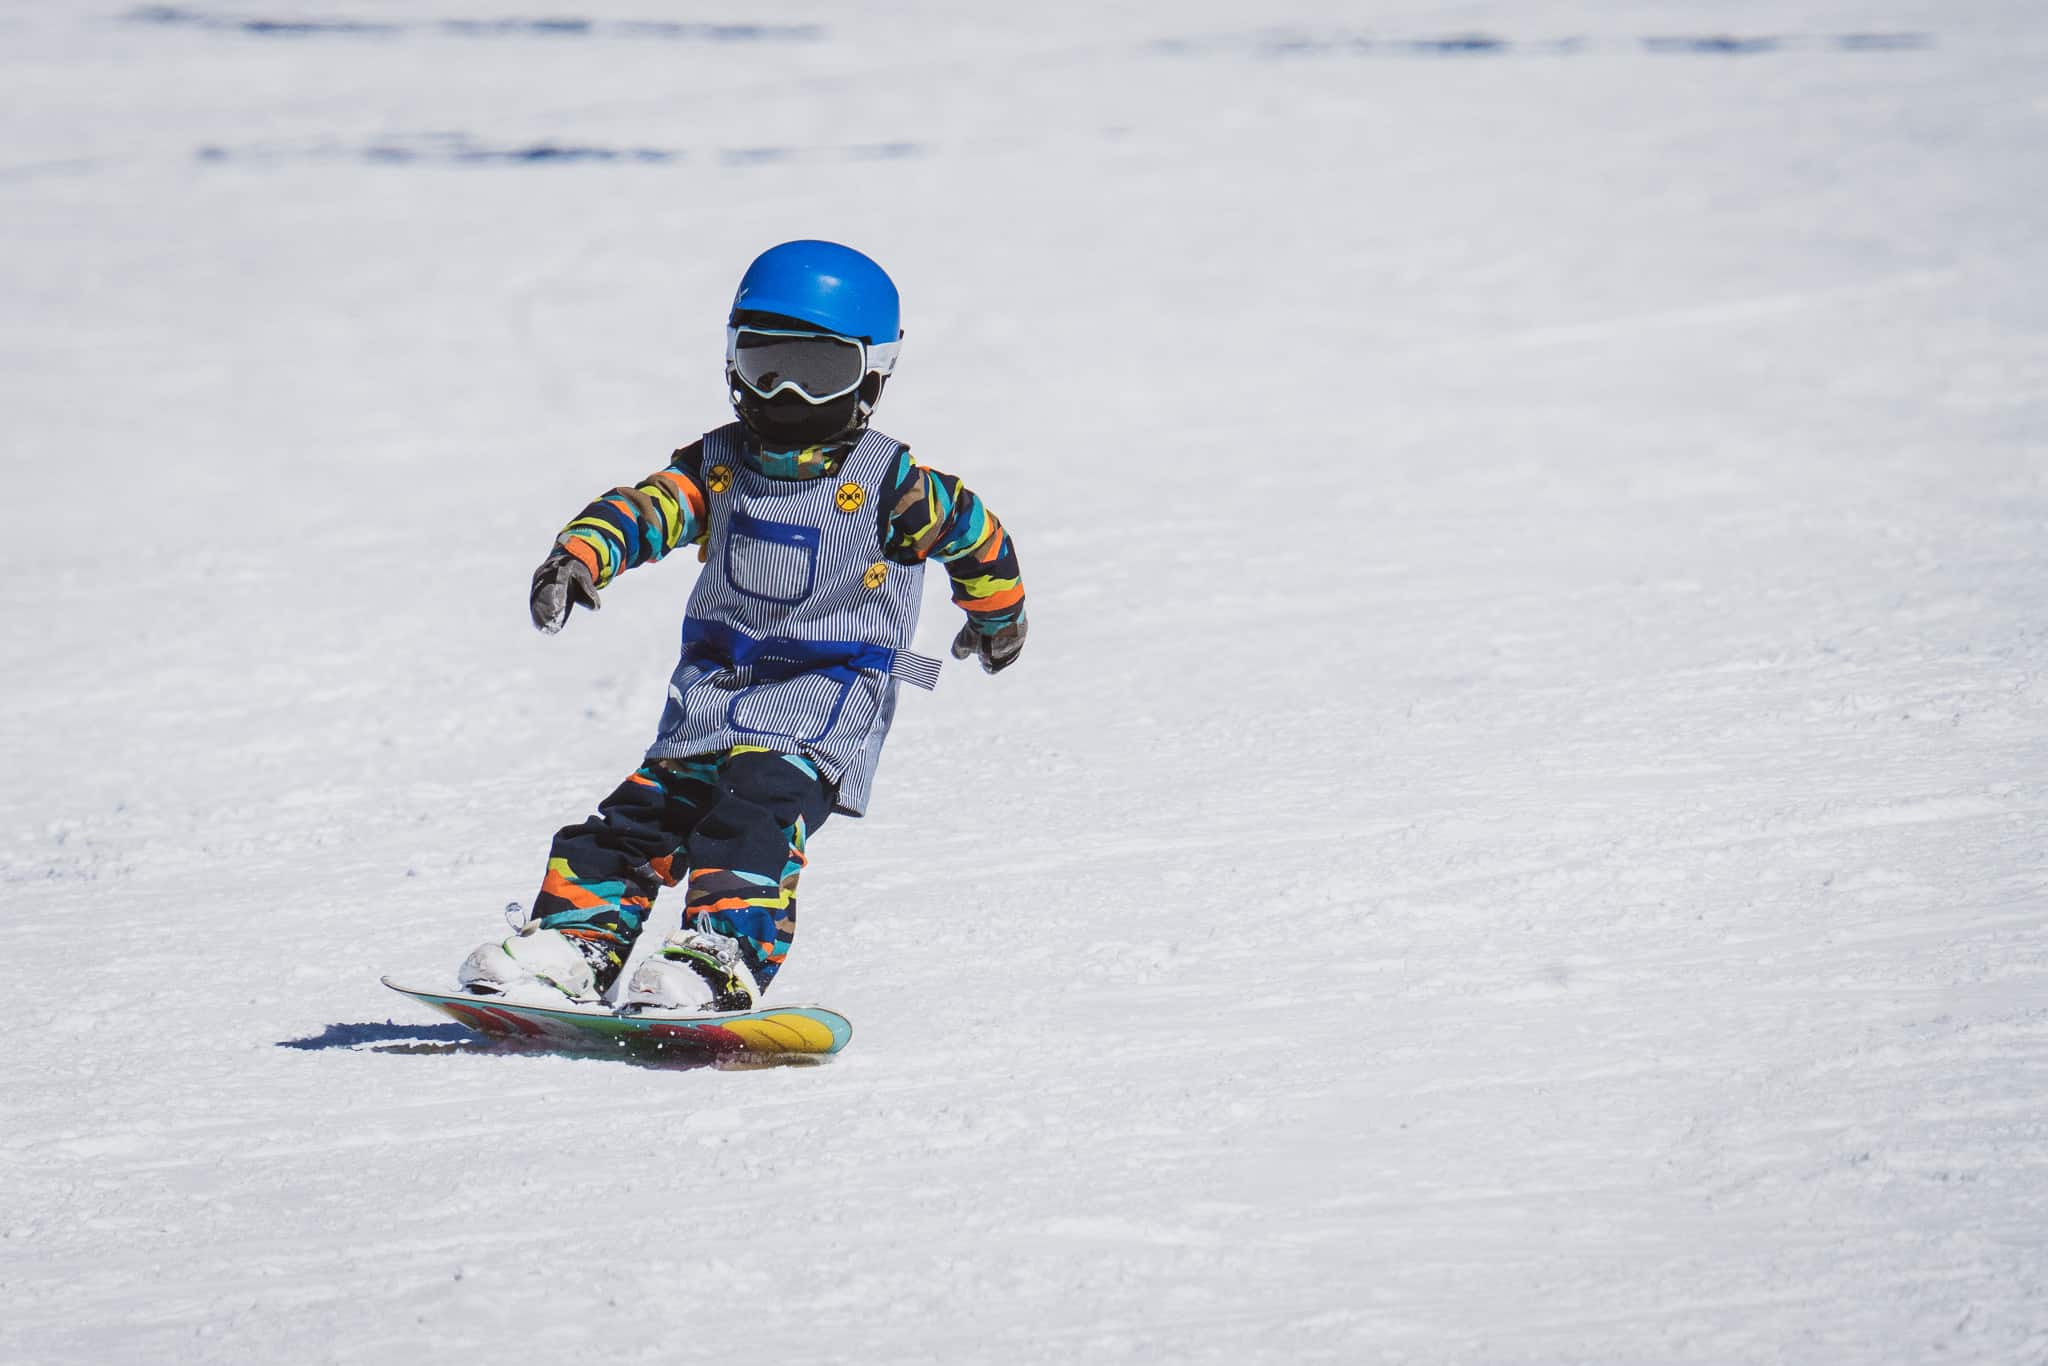 Child snowboarder.